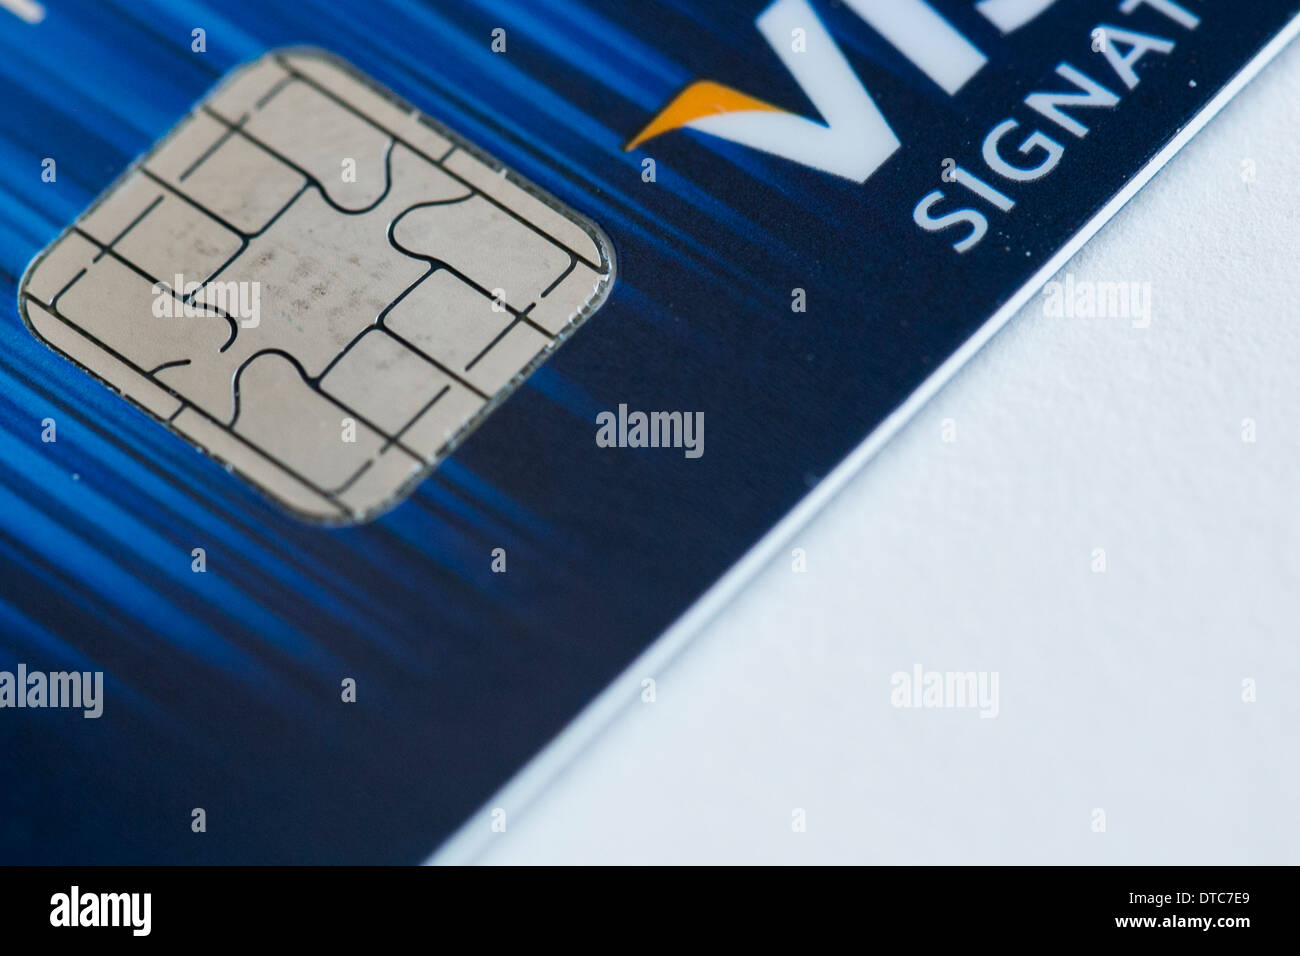 Eine Visa-Kreditkarte mit EMV-Chip, nebeneinander auch bekannt als "Chip und PIN" mit einem Magnetstreifen-Karte. Stockfoto